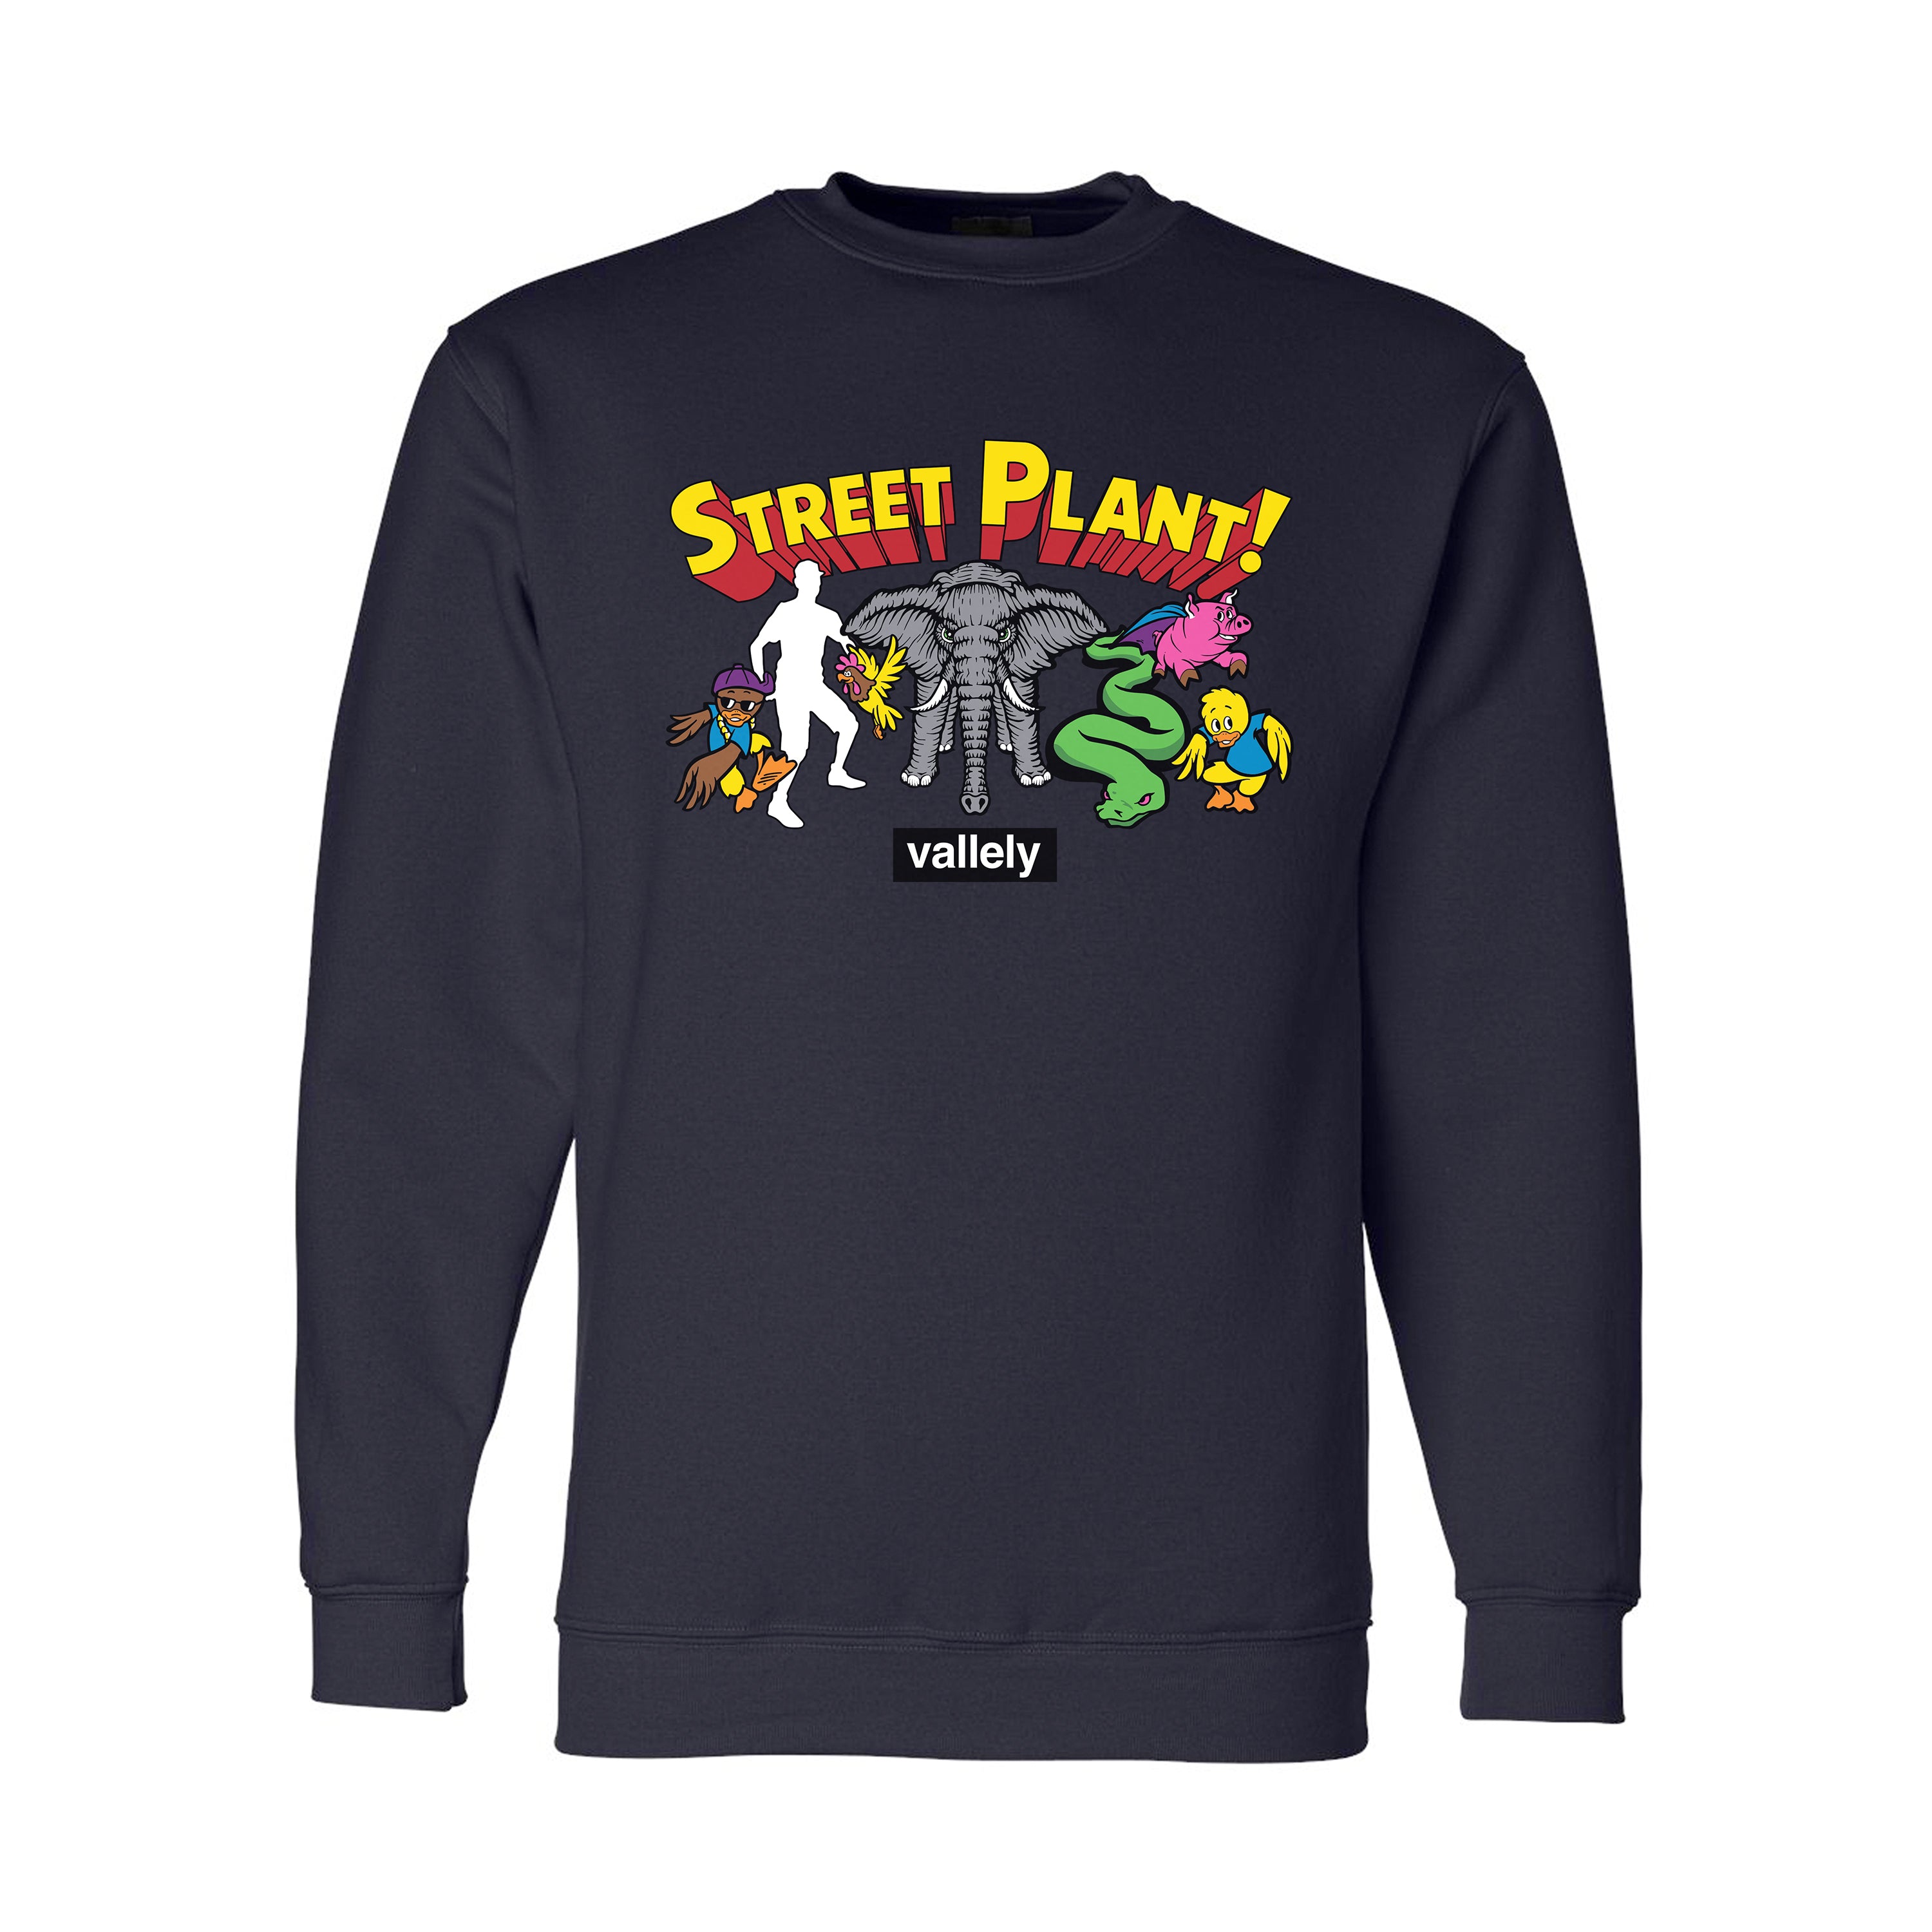 Vallely Super Friends Crew Sweatshirt